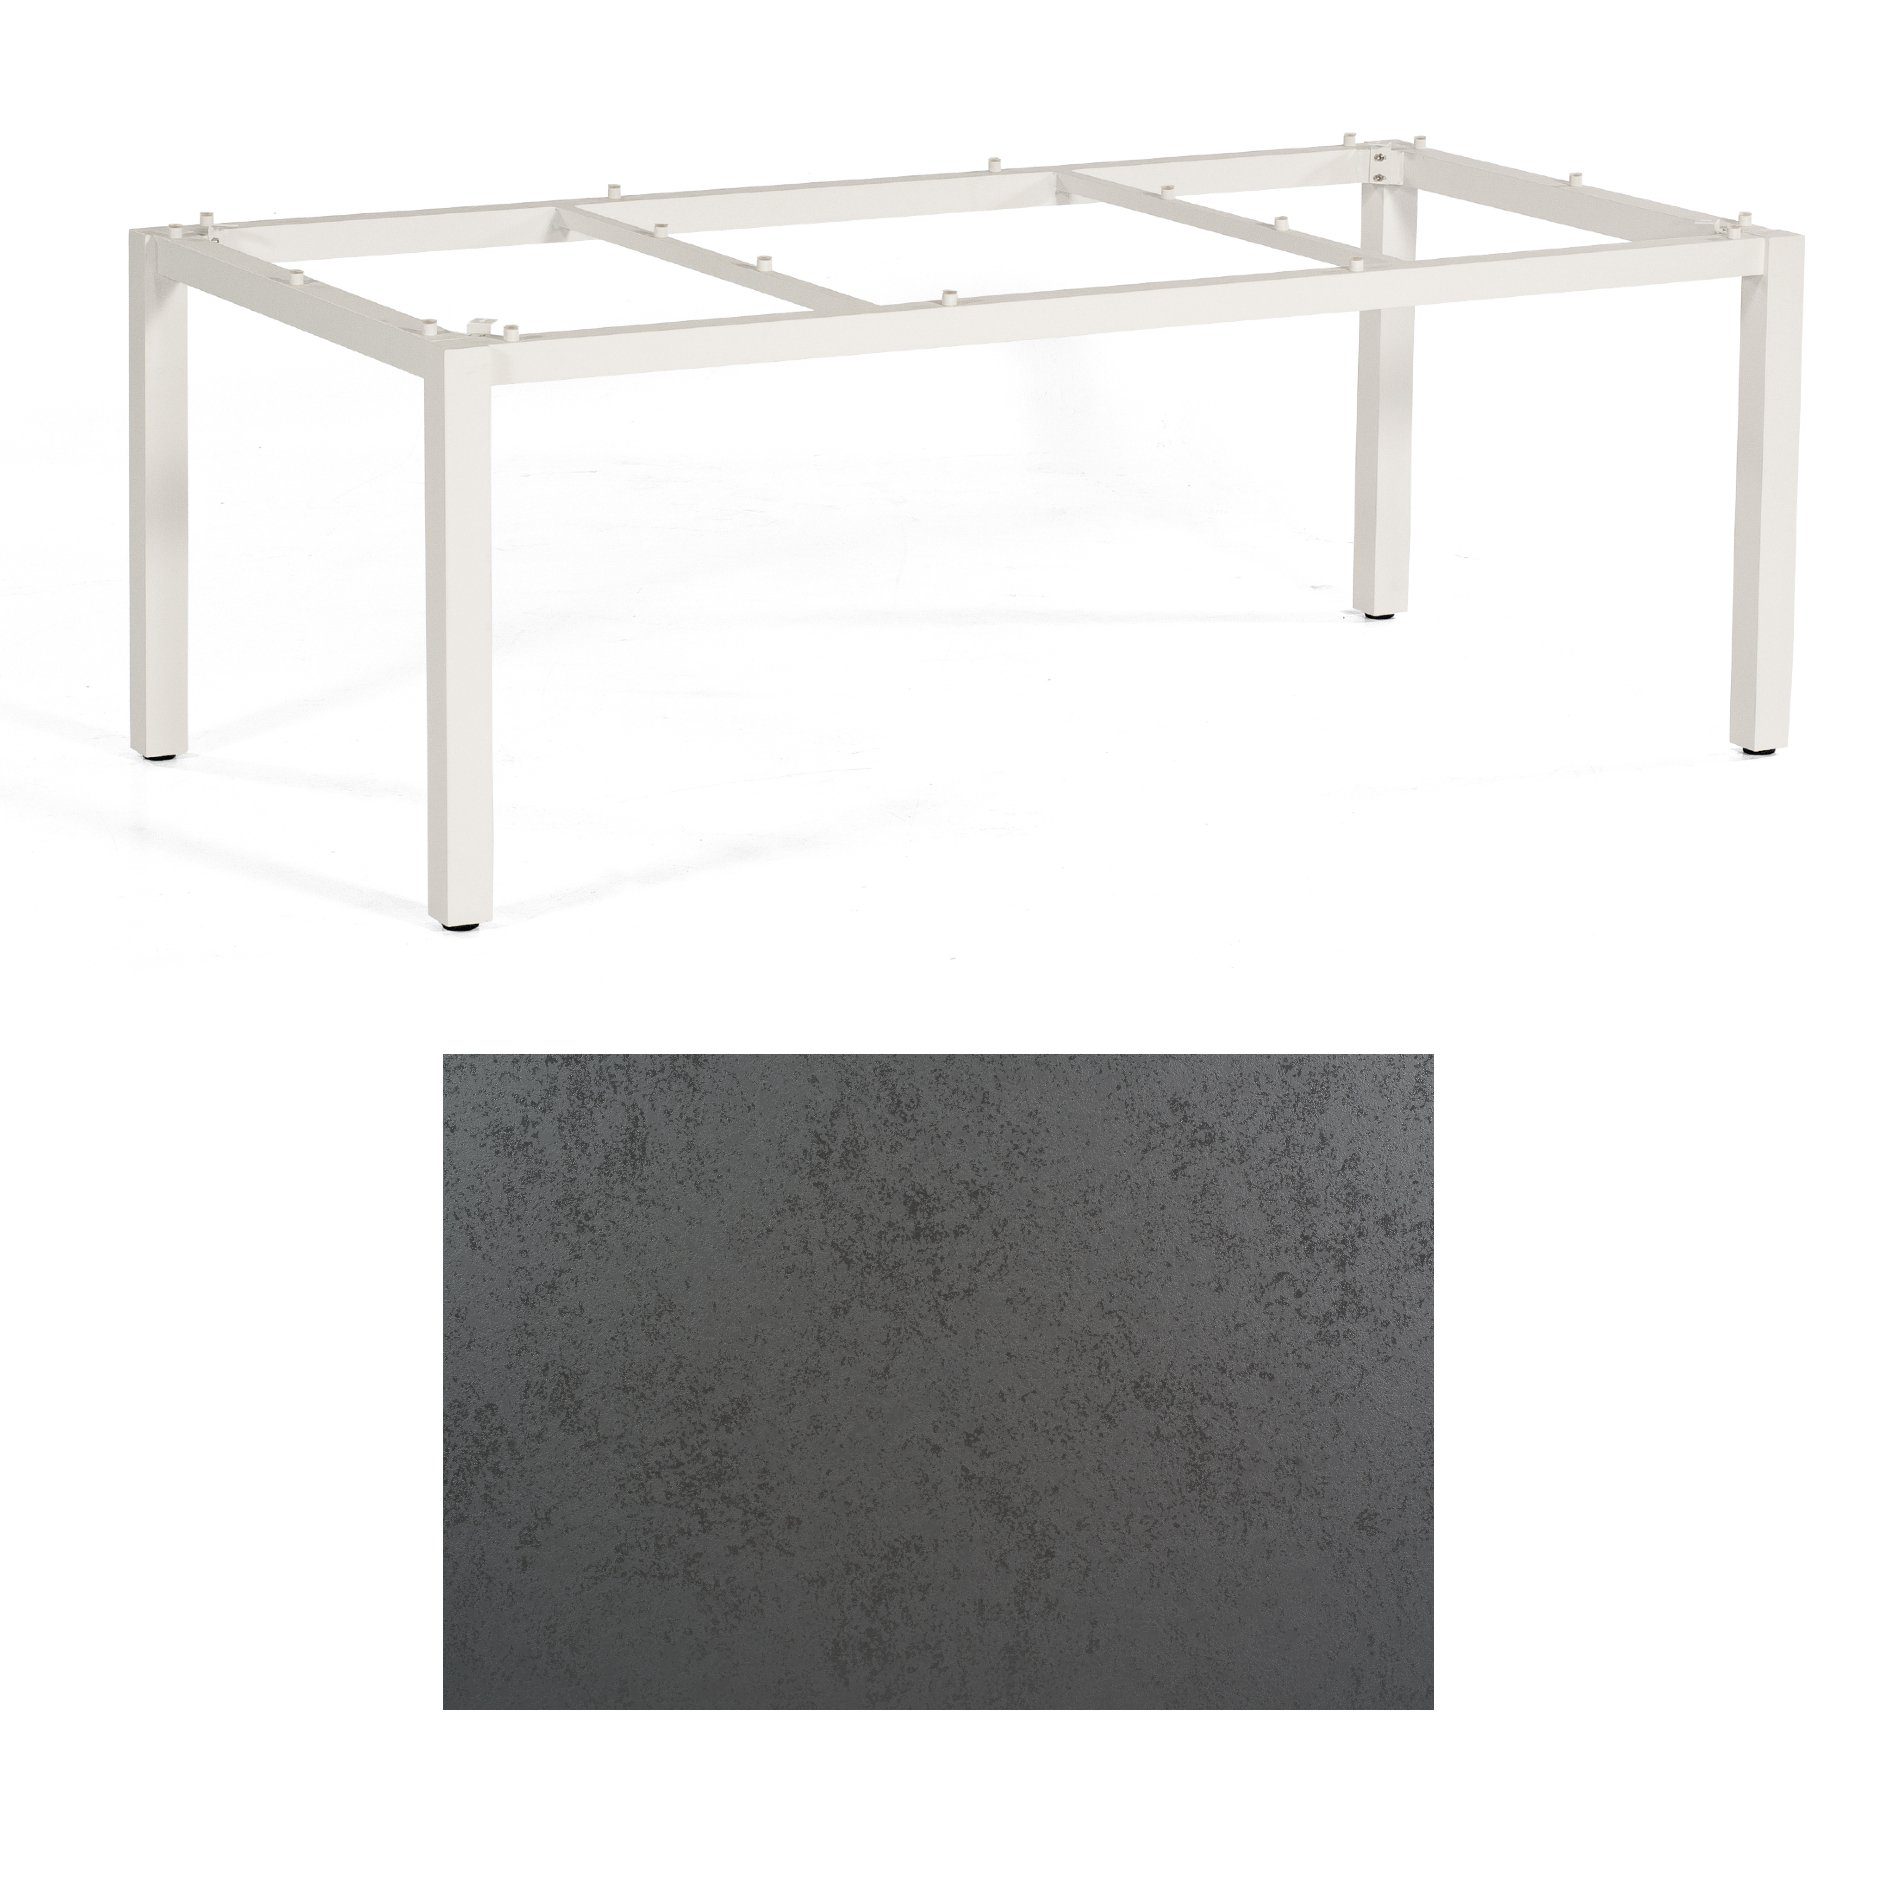 SonnenPartner Tisch „Base“, Gestell Aluminium weiß, Tischplatte HPL Struktura anthrazit, 200x100 cm